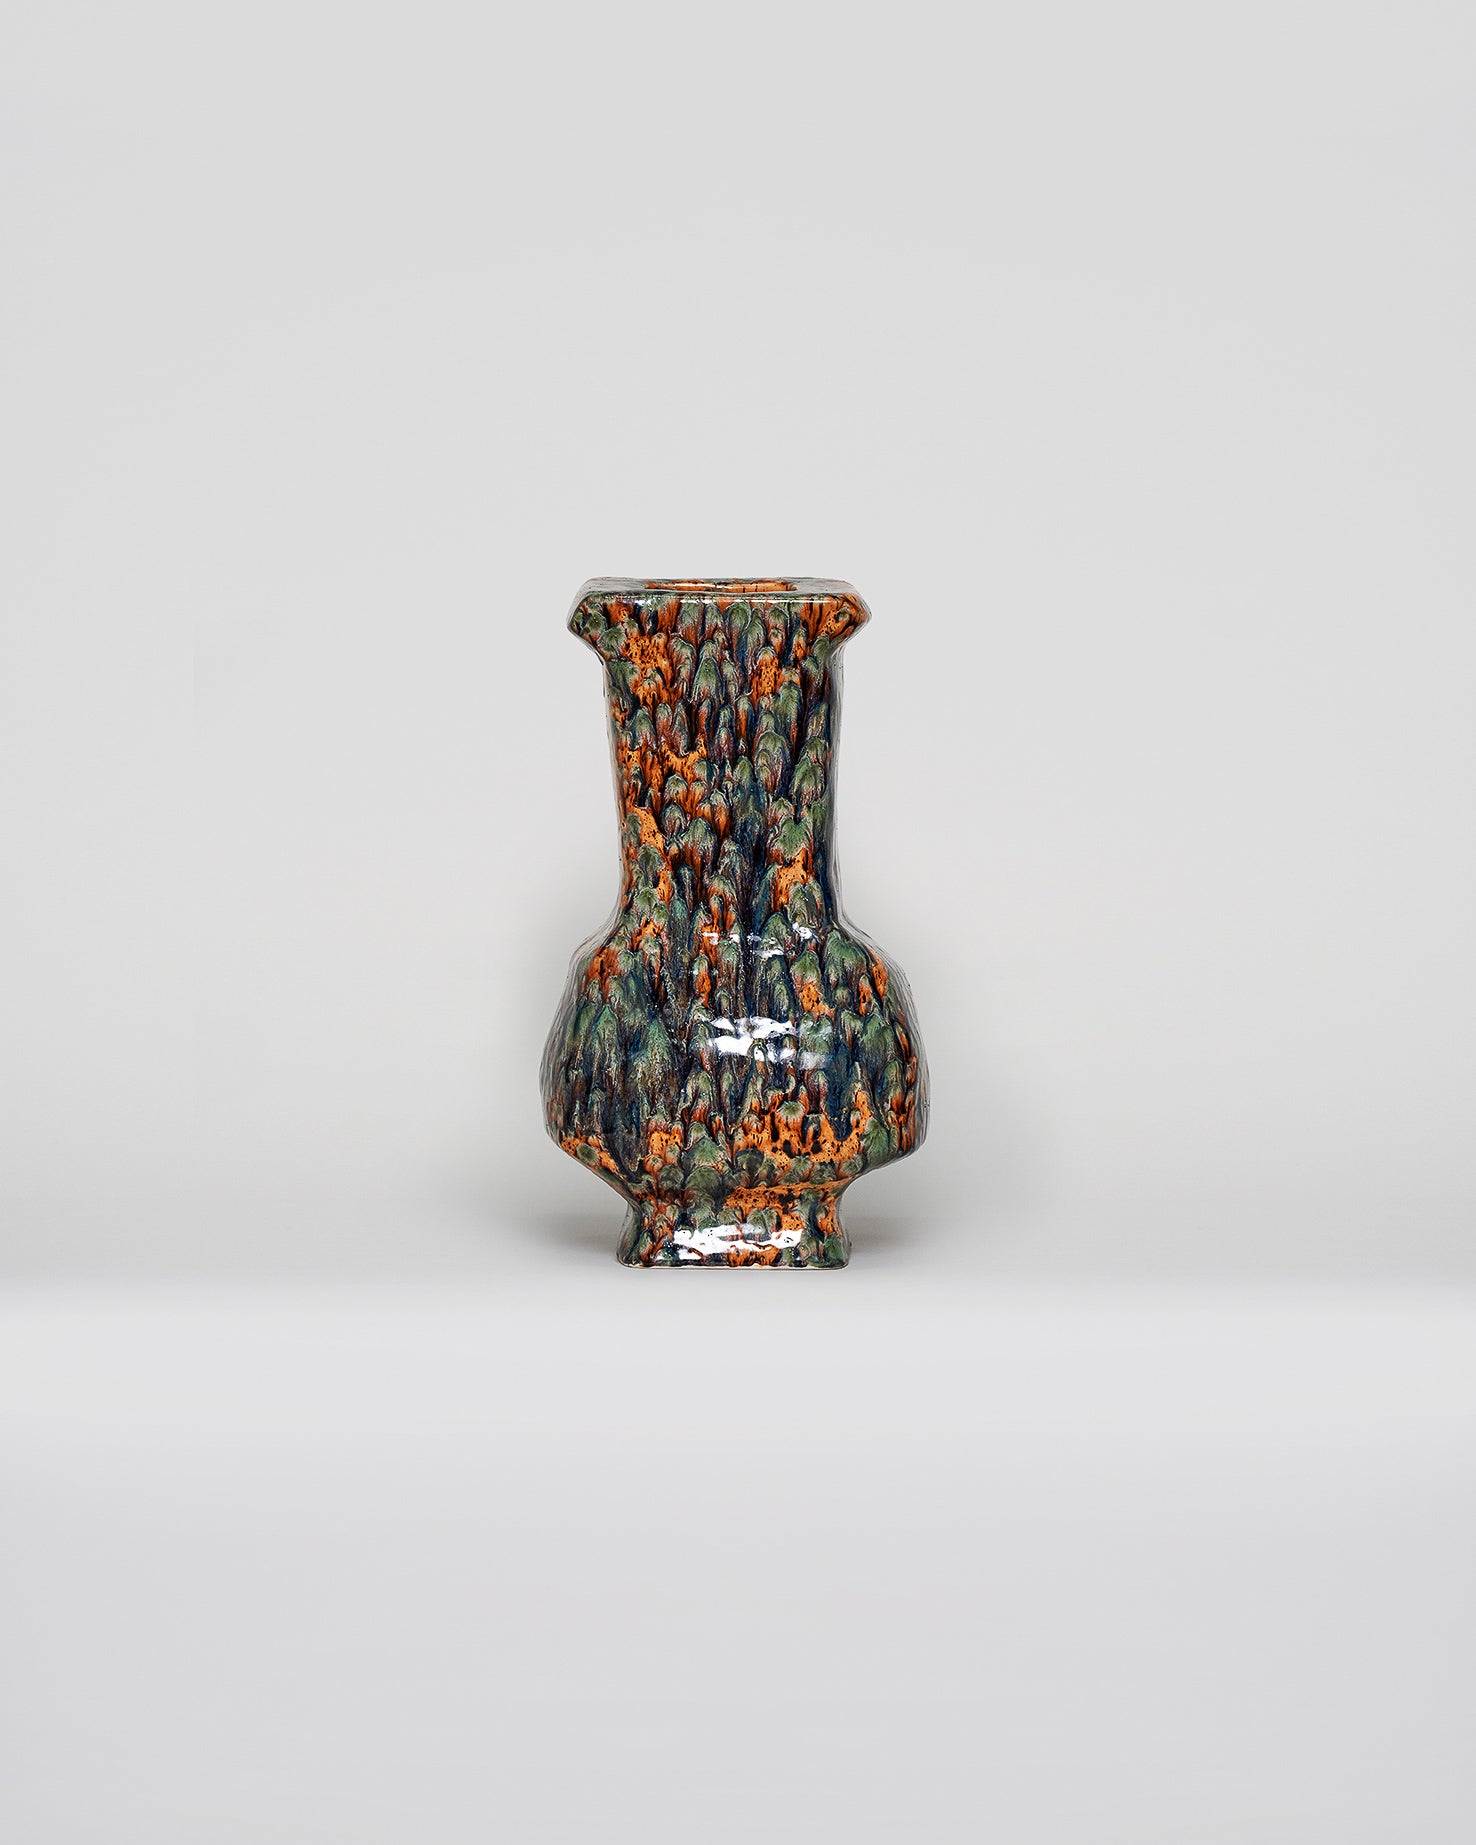 Glazed ceramic vessel by Eva Makes Ceramics